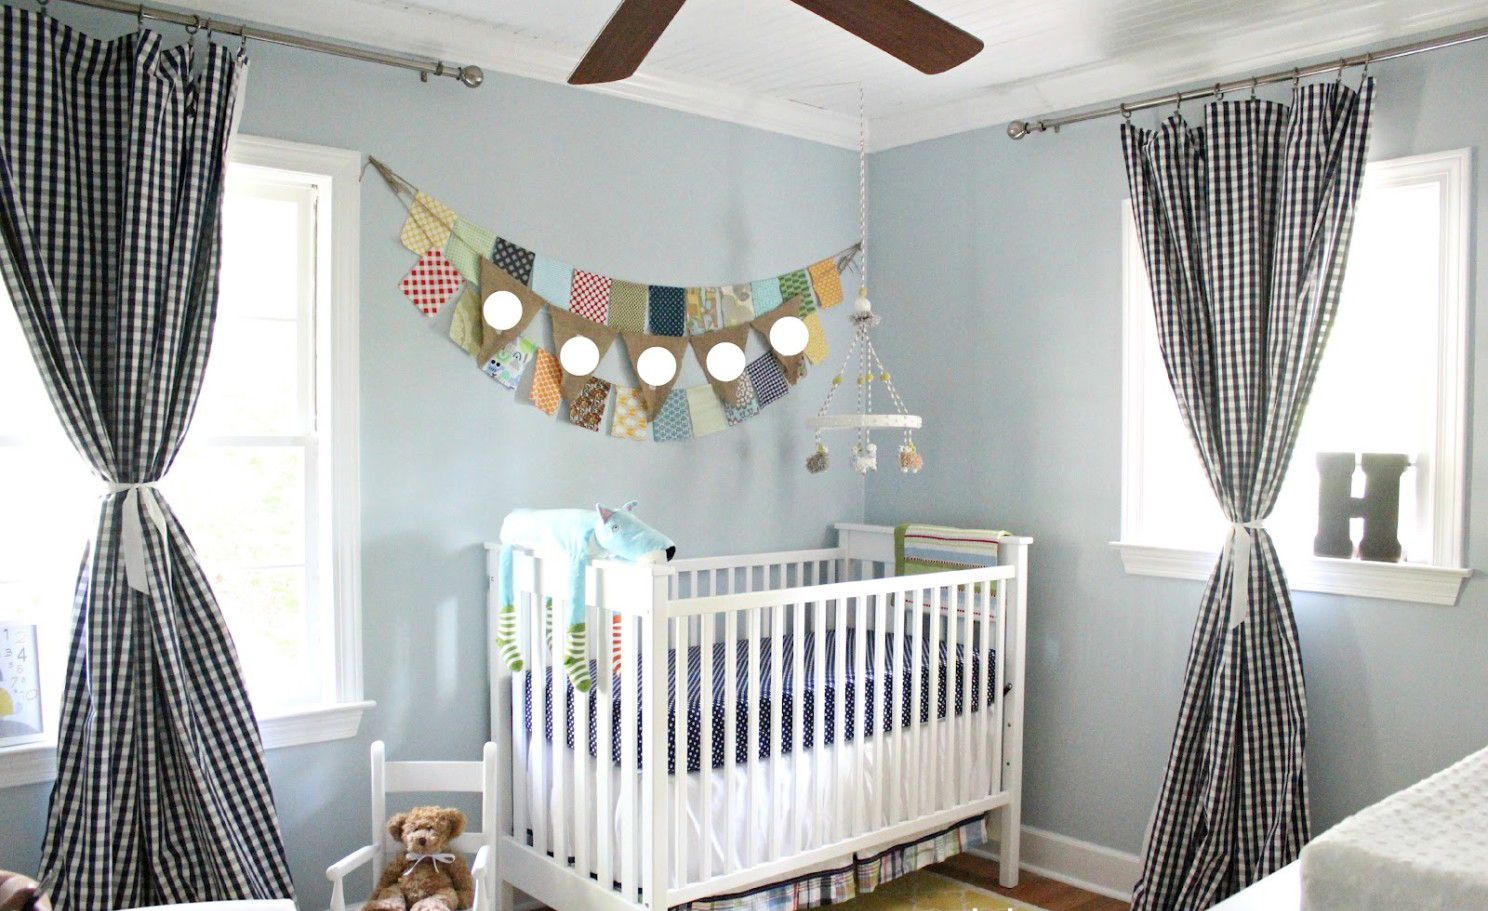 шторы в детской комнате малыша